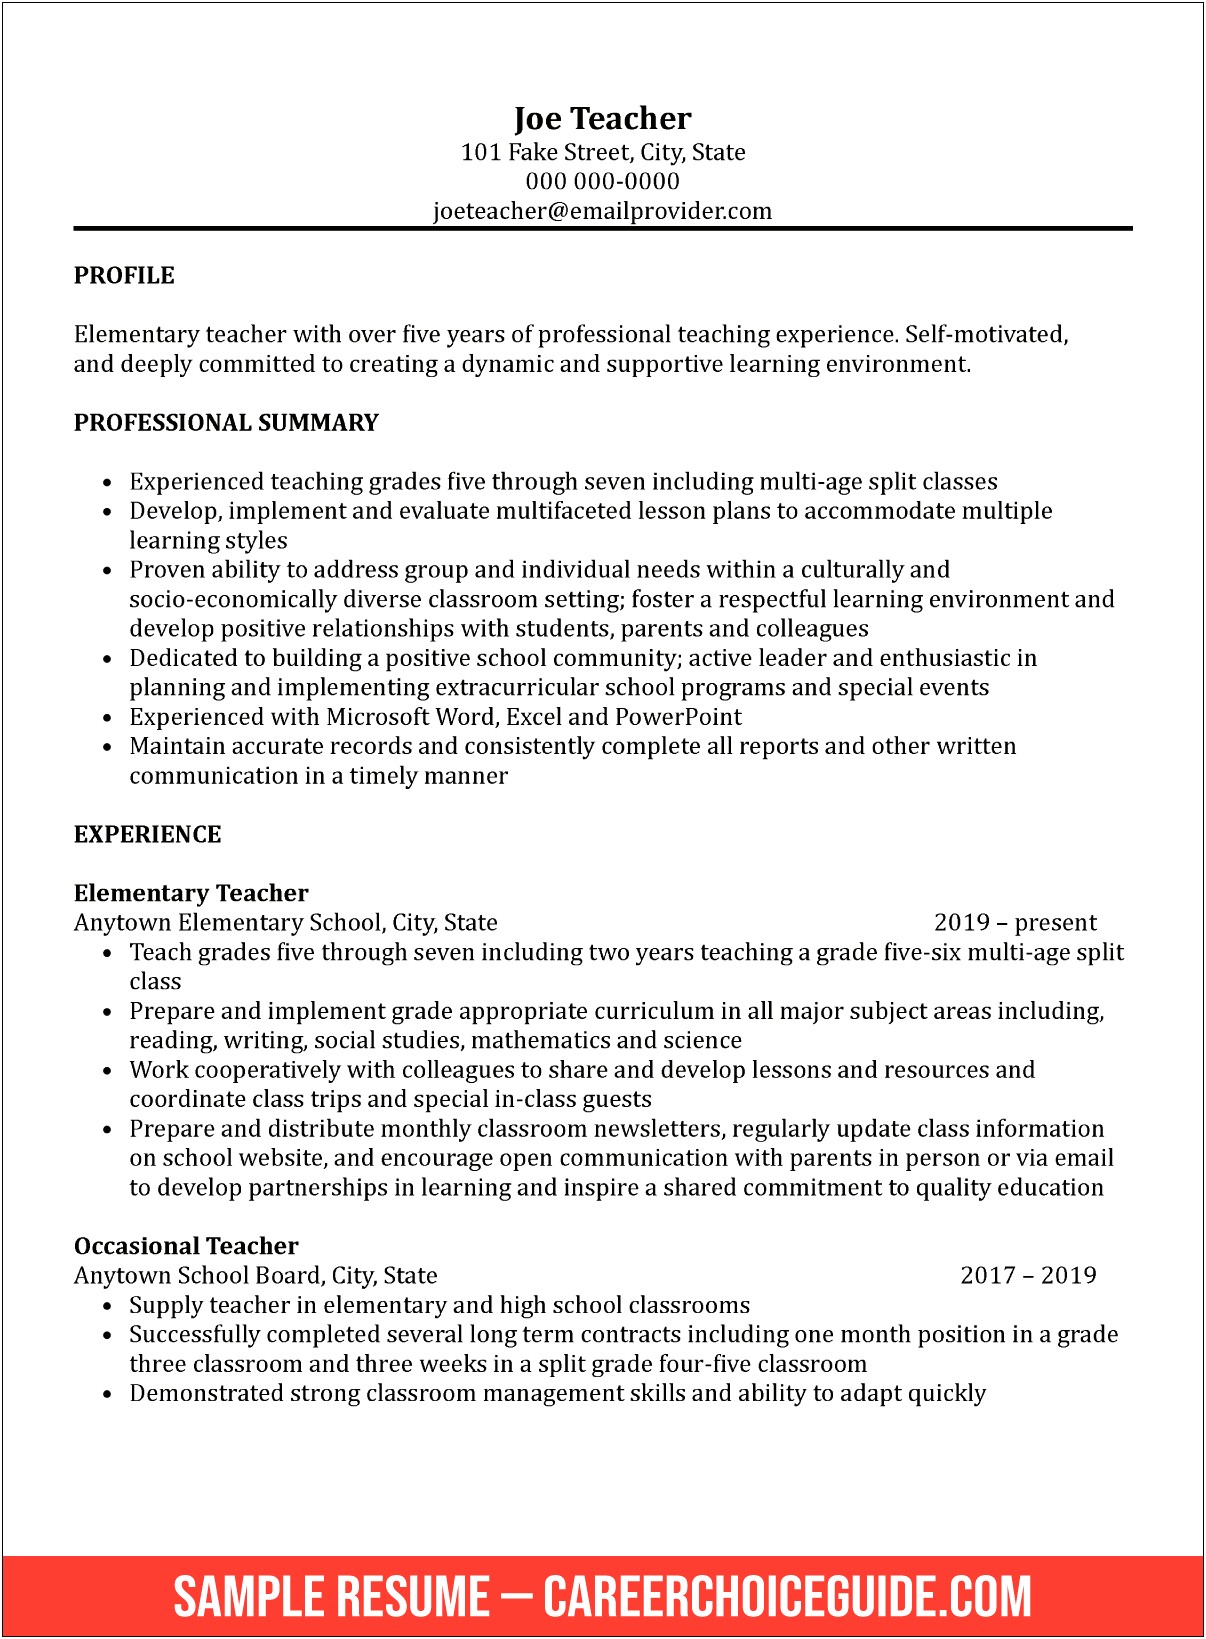 Fake Resume For Teacher Job